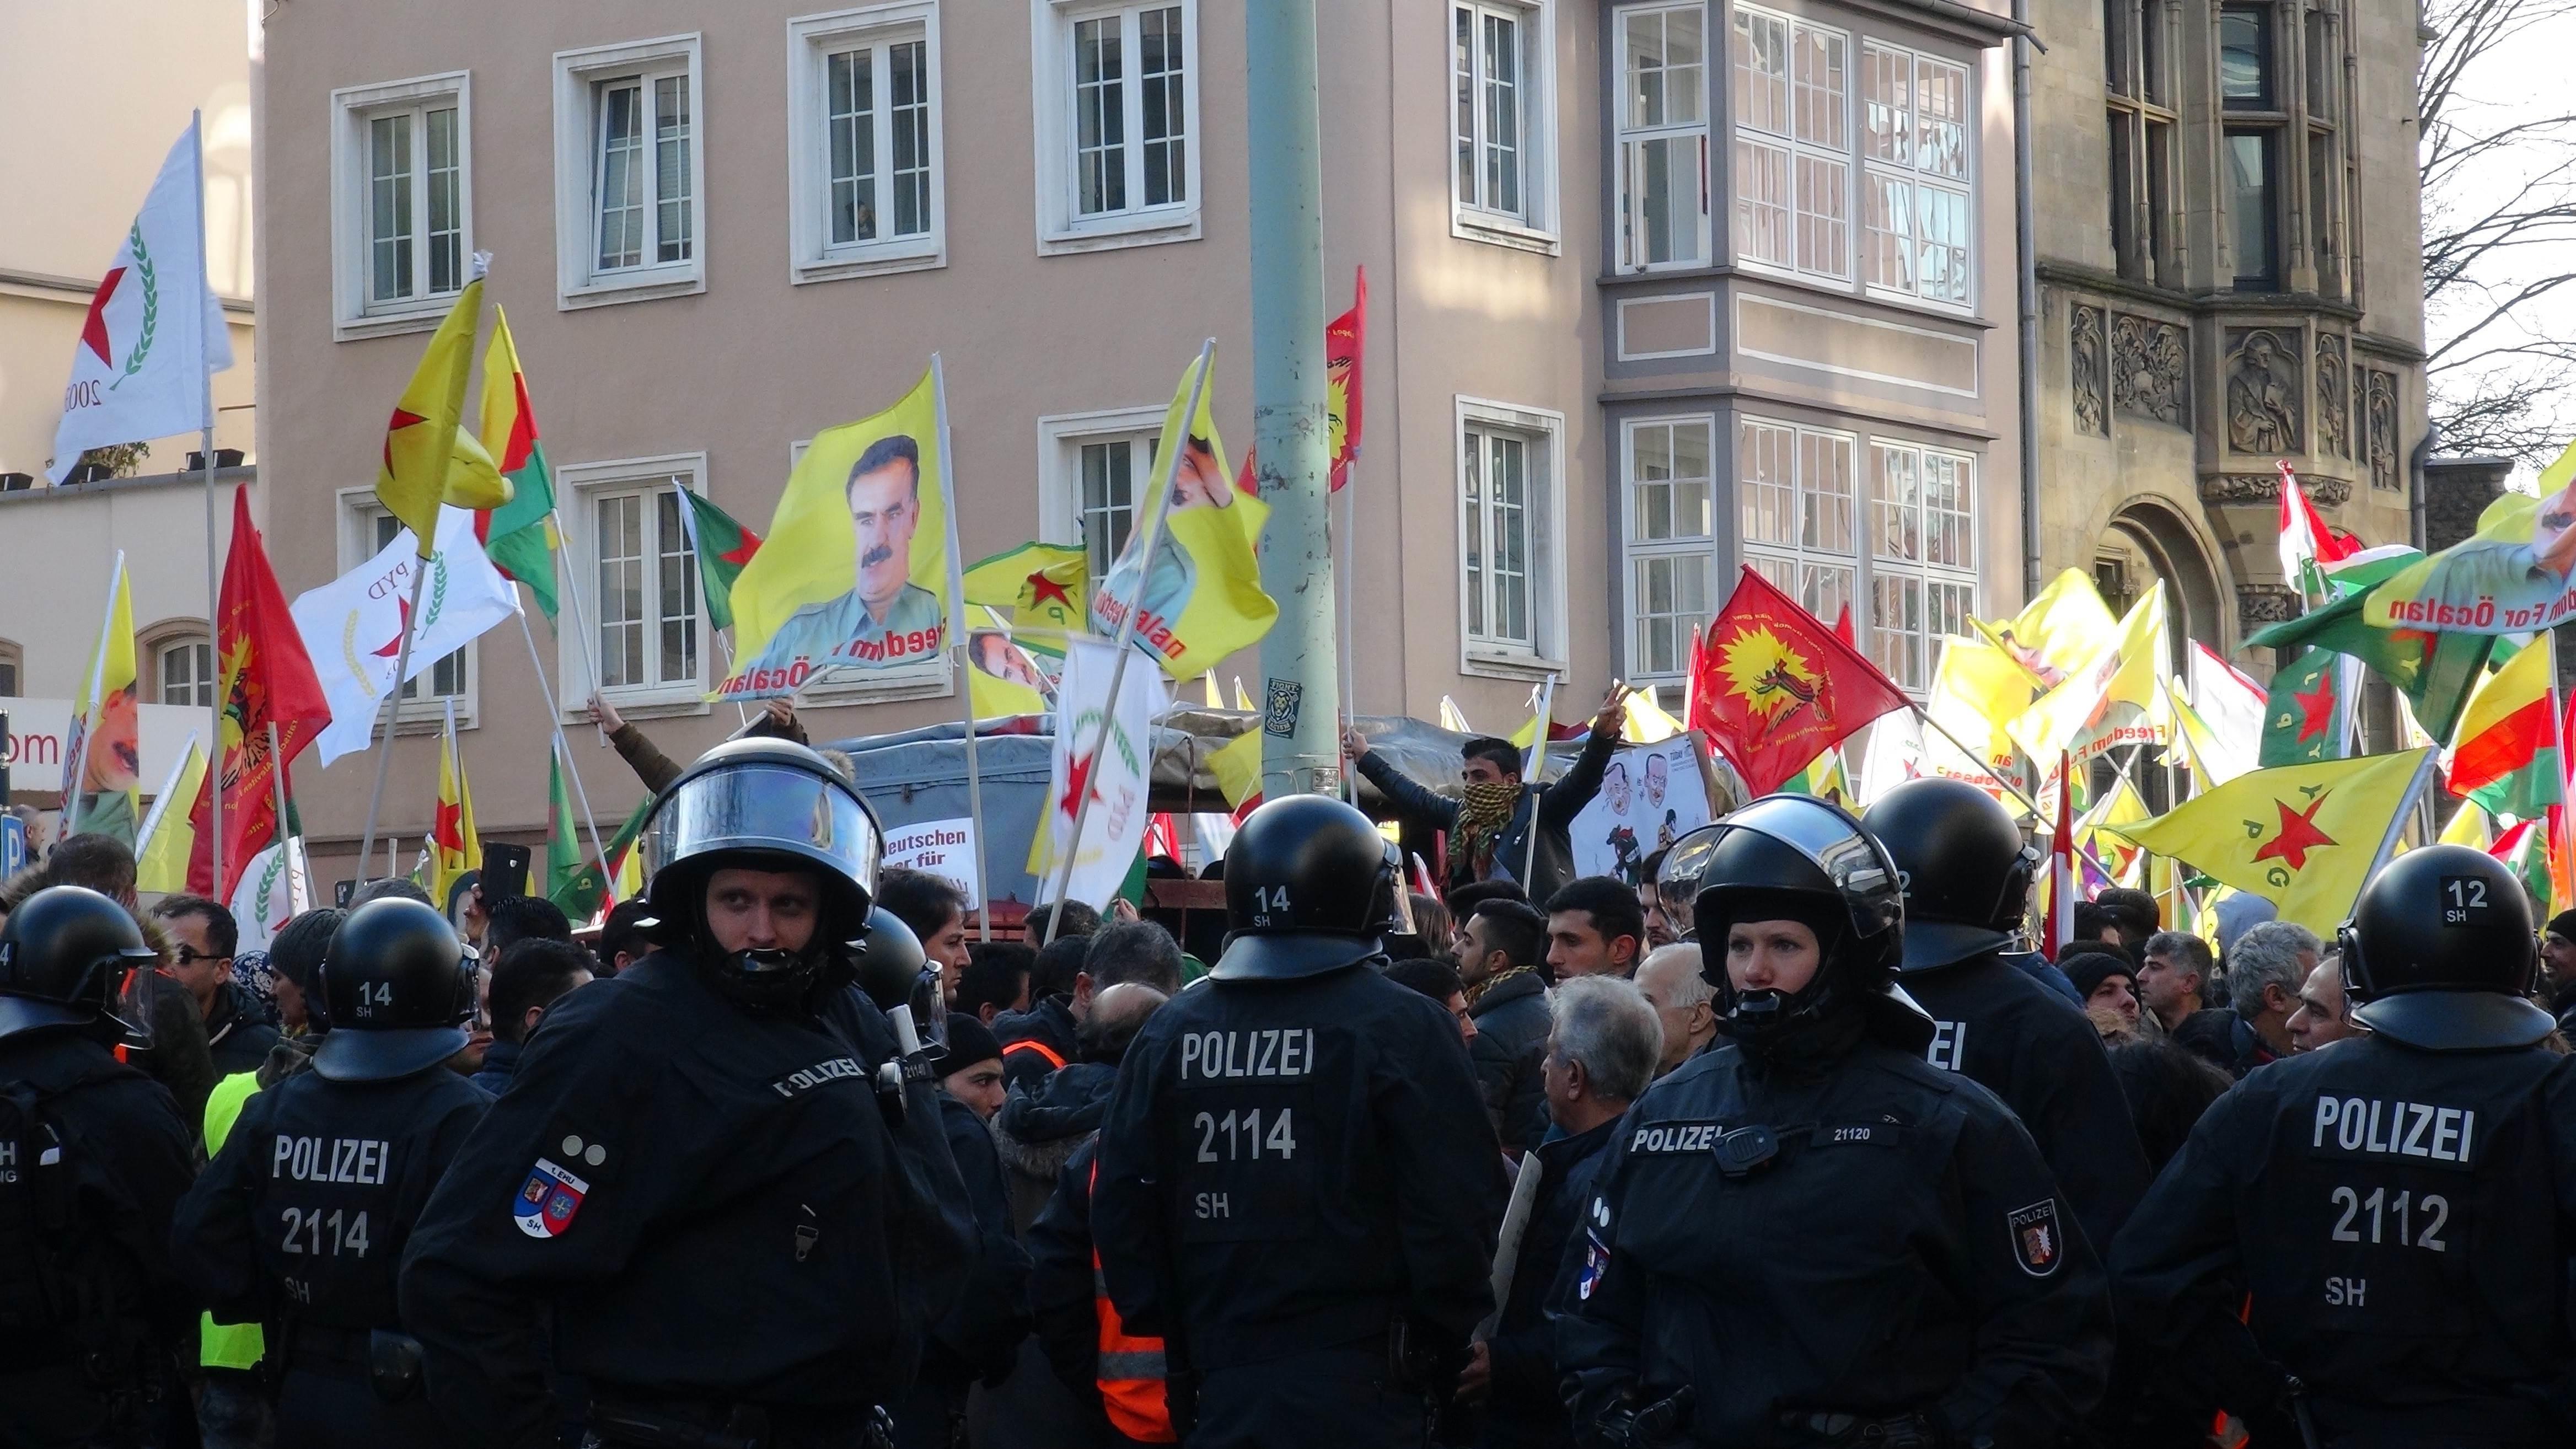 Almanyada yasa dışı PKK yürüyüşü durduruldu